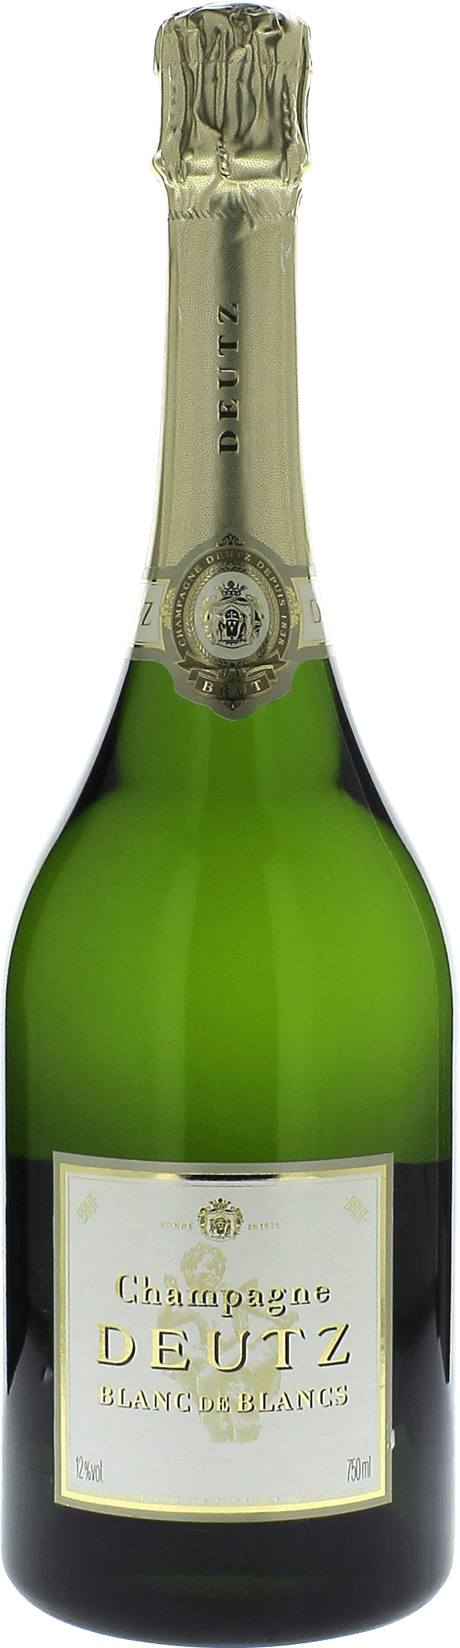 Deutz blanc de blancs en coffret 2013  DEUTZ, Champagne